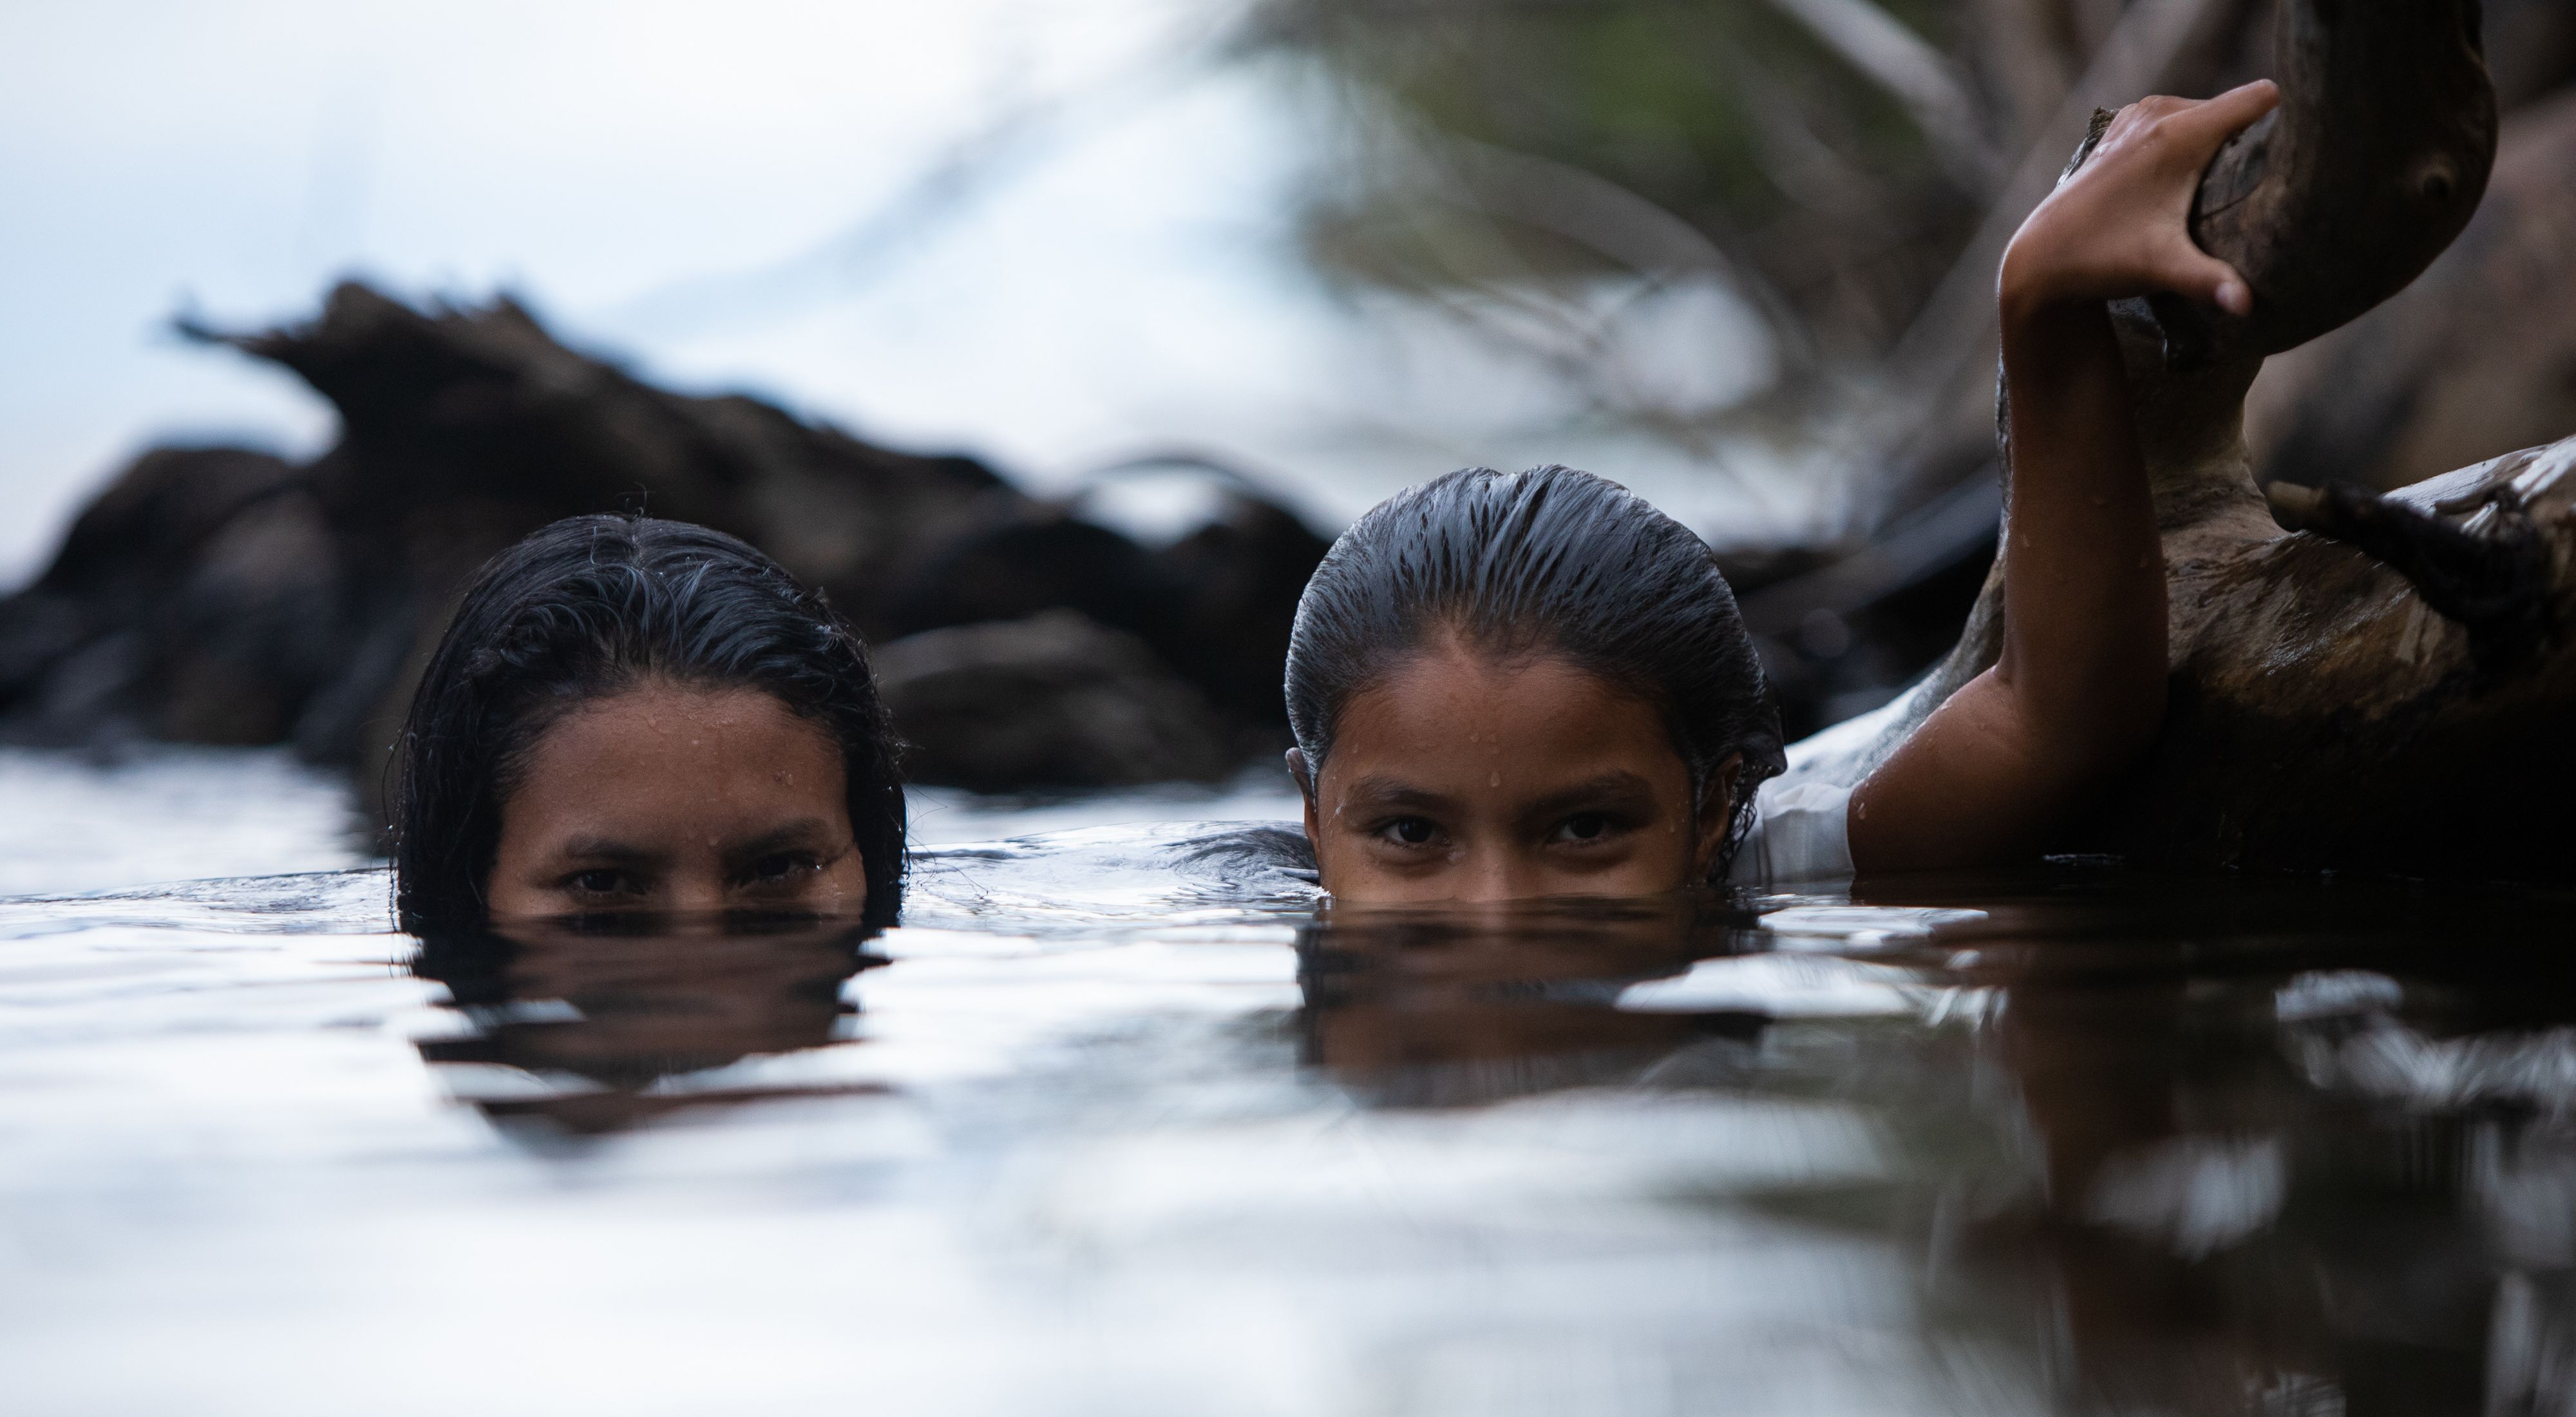 Meninas brincando em rio e olhando para câmera.